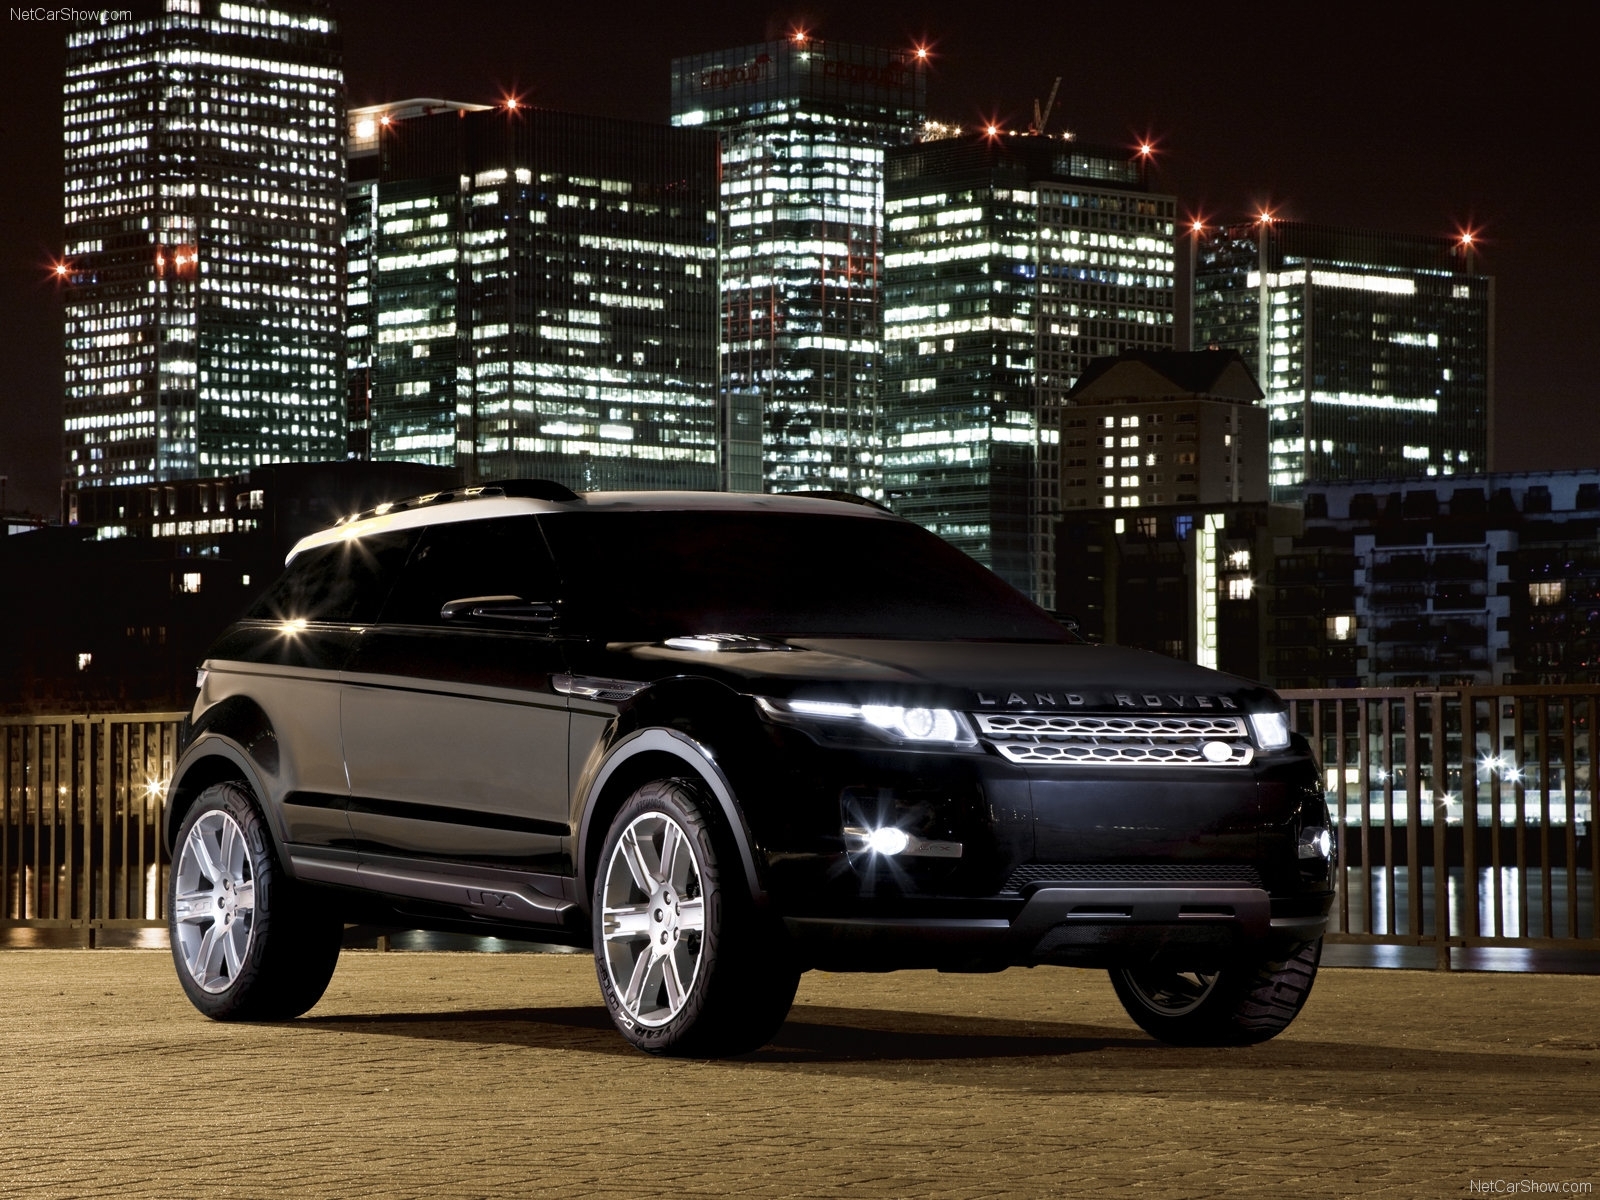 Laden Sie Land Rover HD-Desktop-Hintergründe herunter